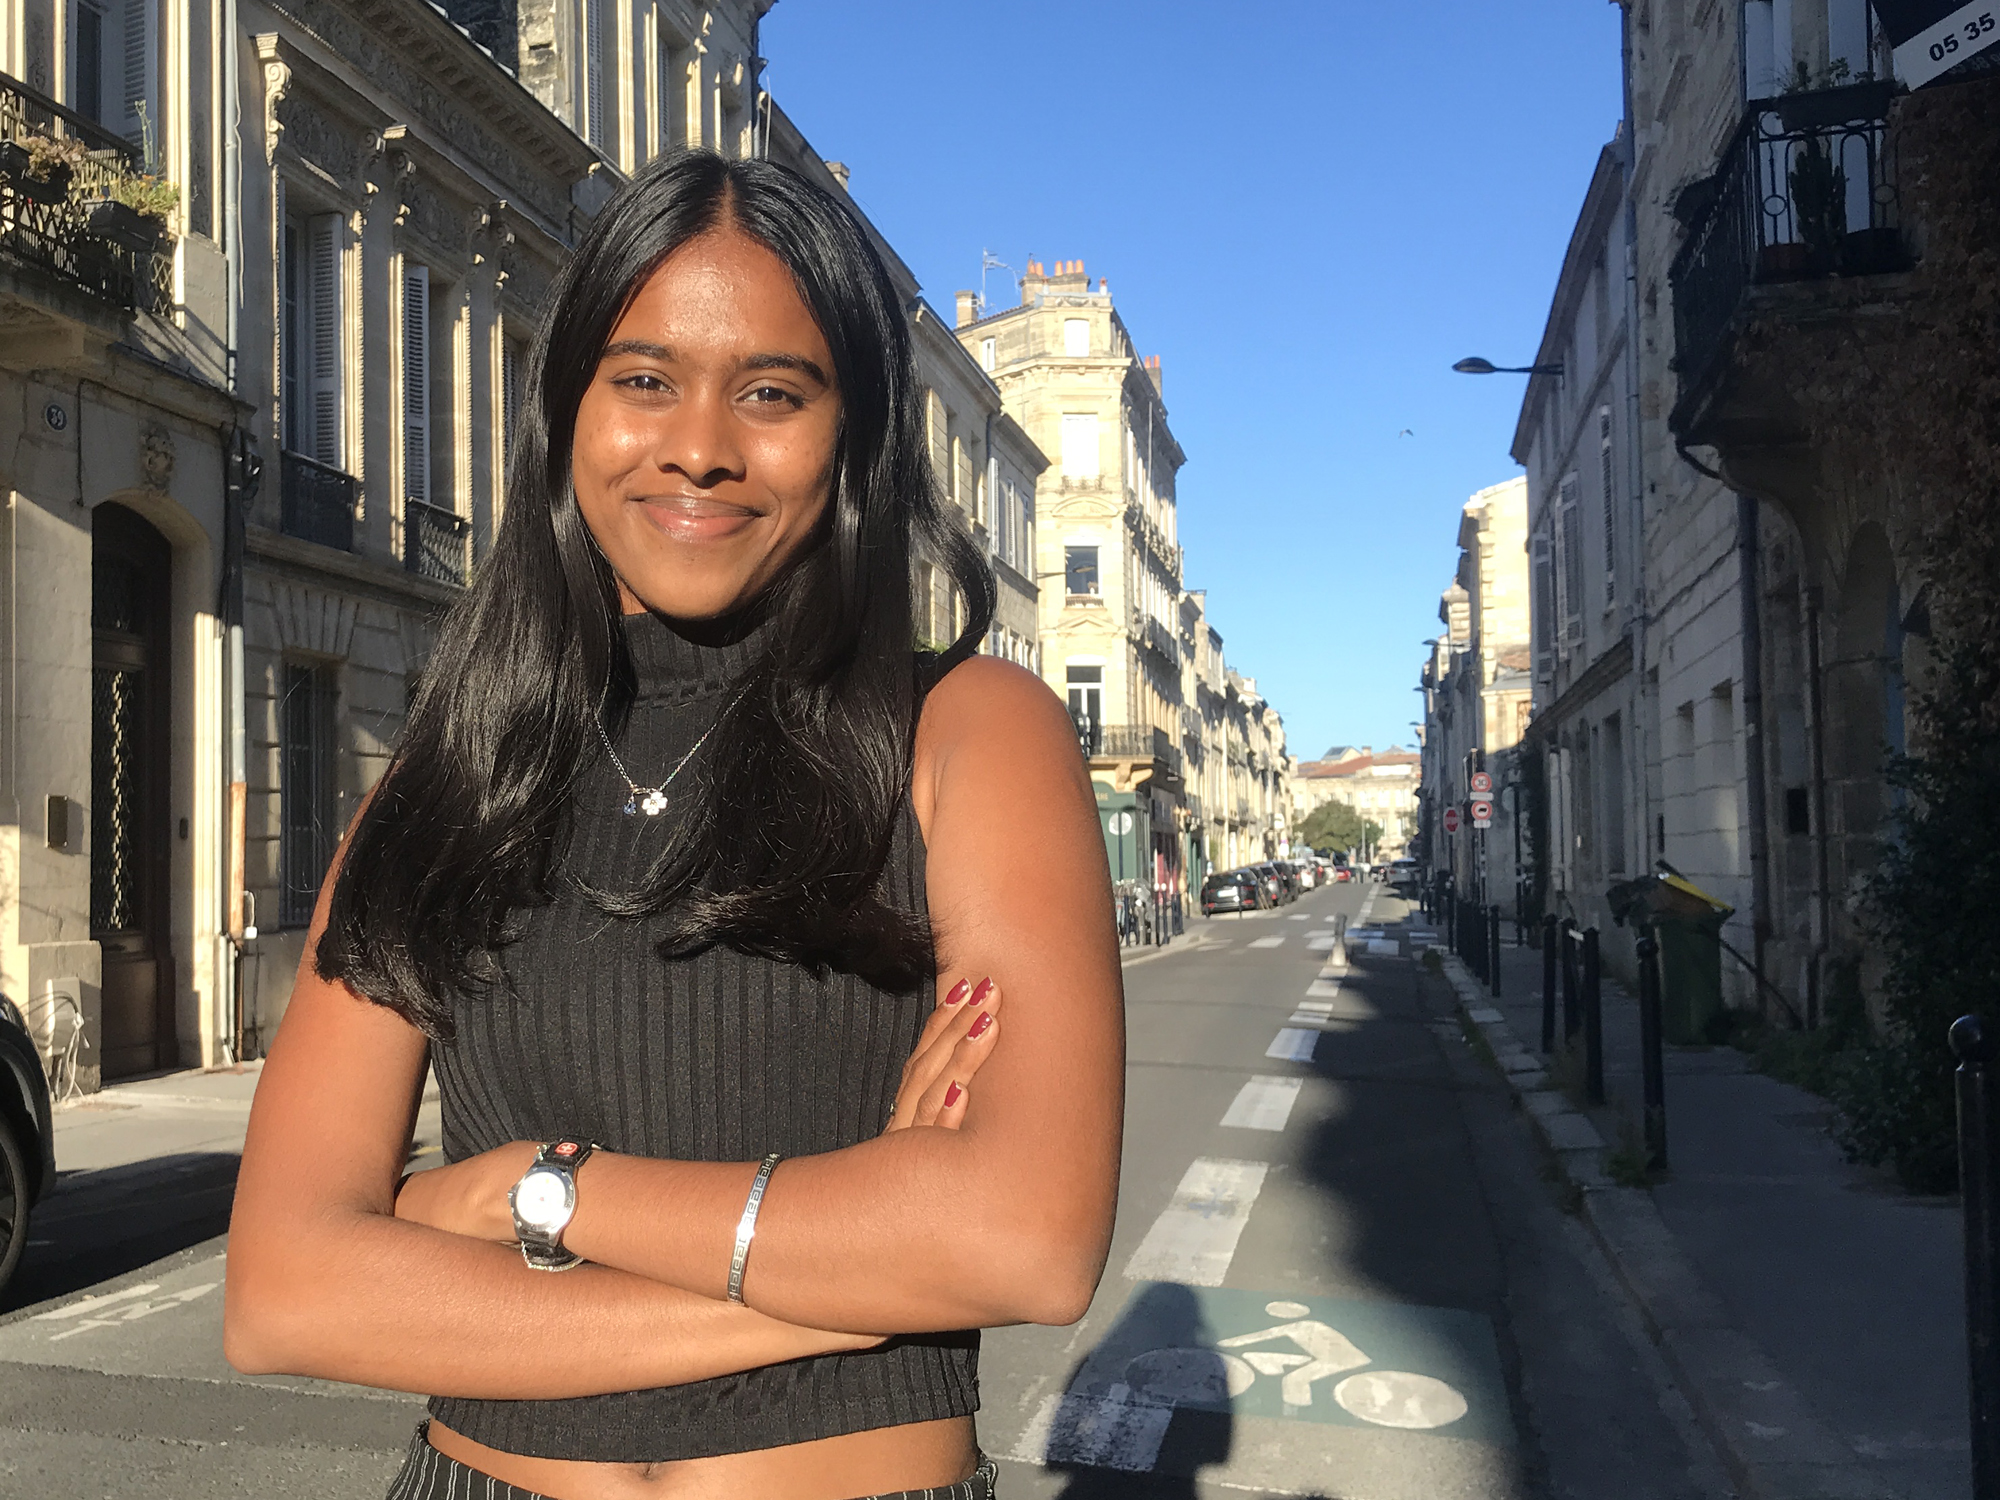 A tout juste 18 ans, une lycéenne srilankaise à Bordeaux sommée de quitter le territoire français